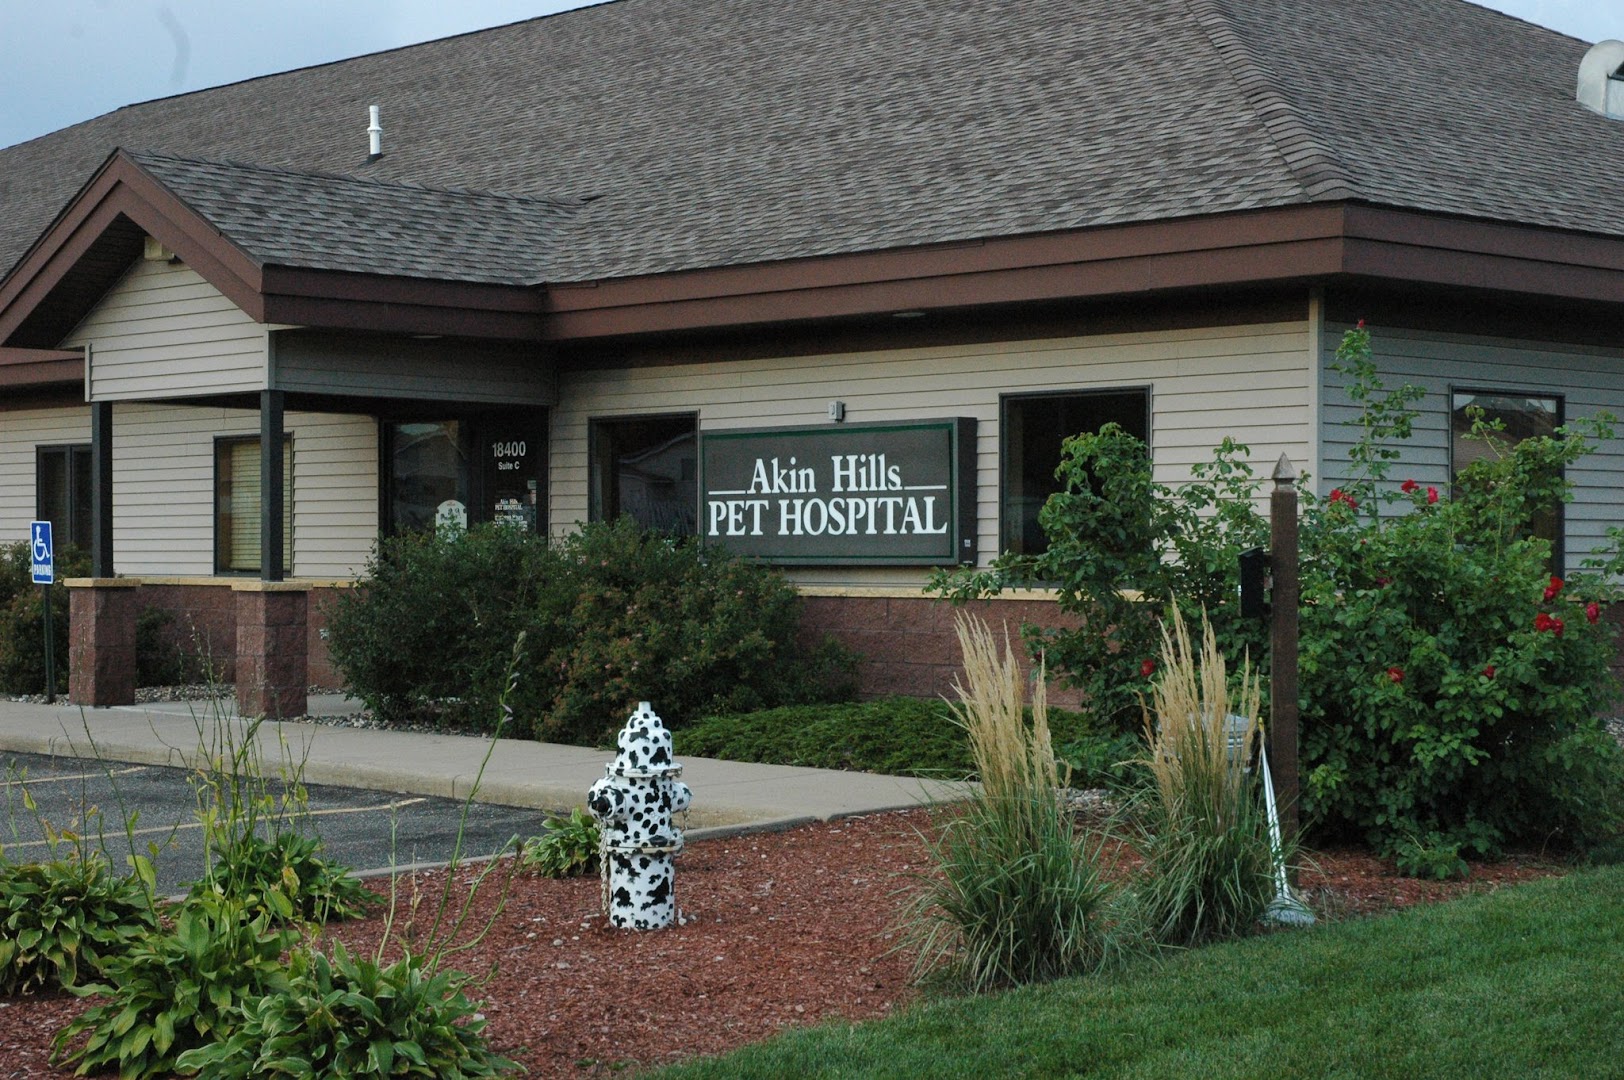 Akin Hills Pet Hospital